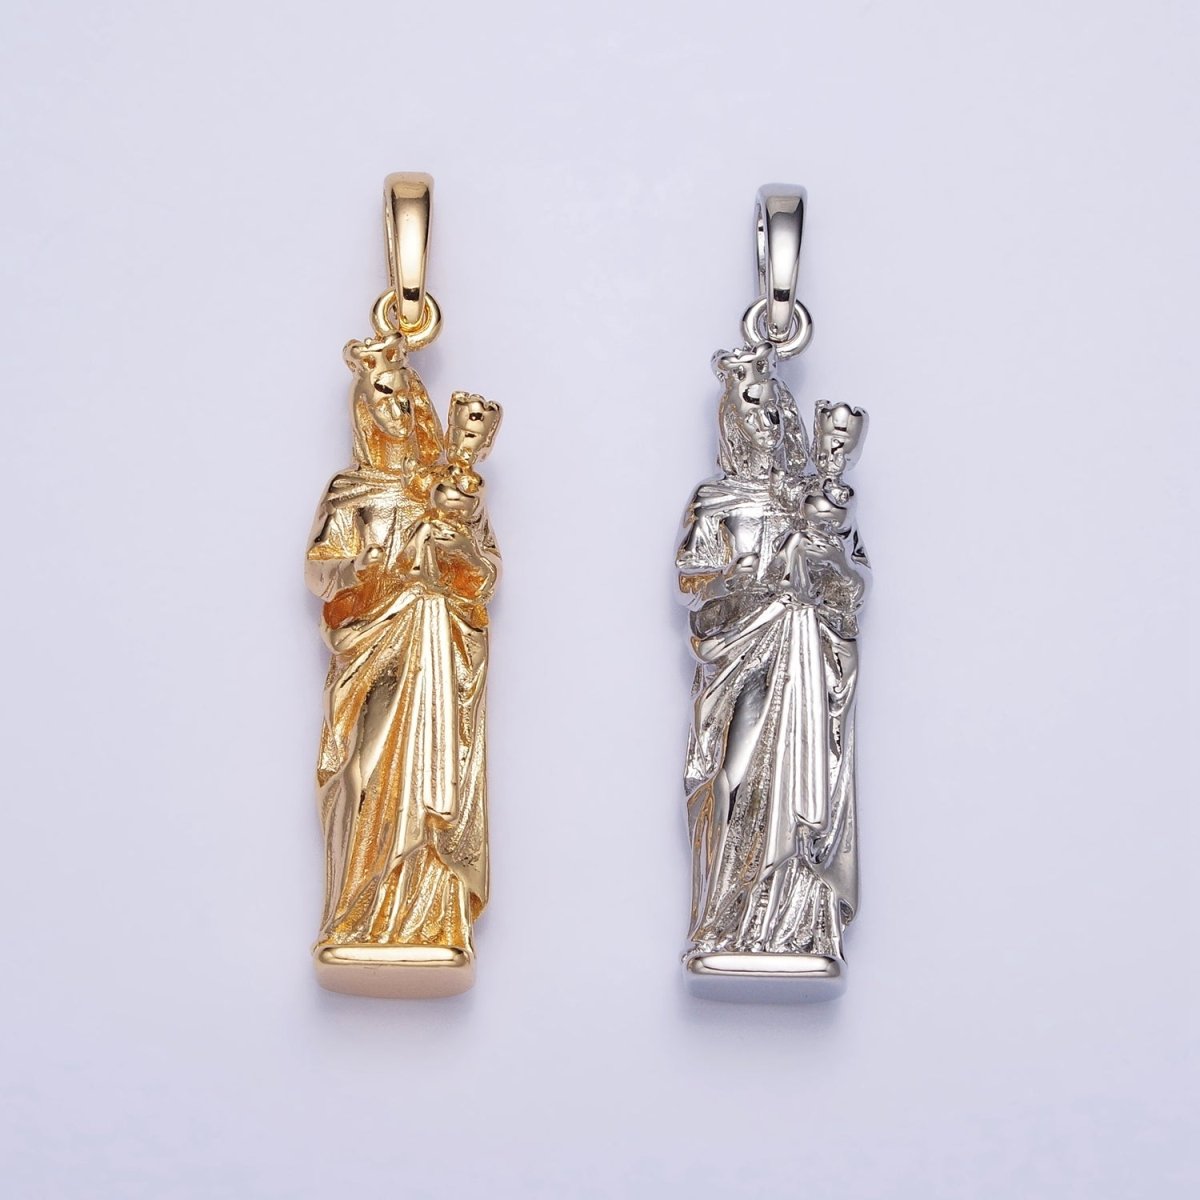 Virgin Mary Charm Necklace, Virgen Del Carmen Pendant, Virgen de la Caridad del Cobre Religious Necklace Pendant in Gold, Silver AA173 AA200 - DLUXCA